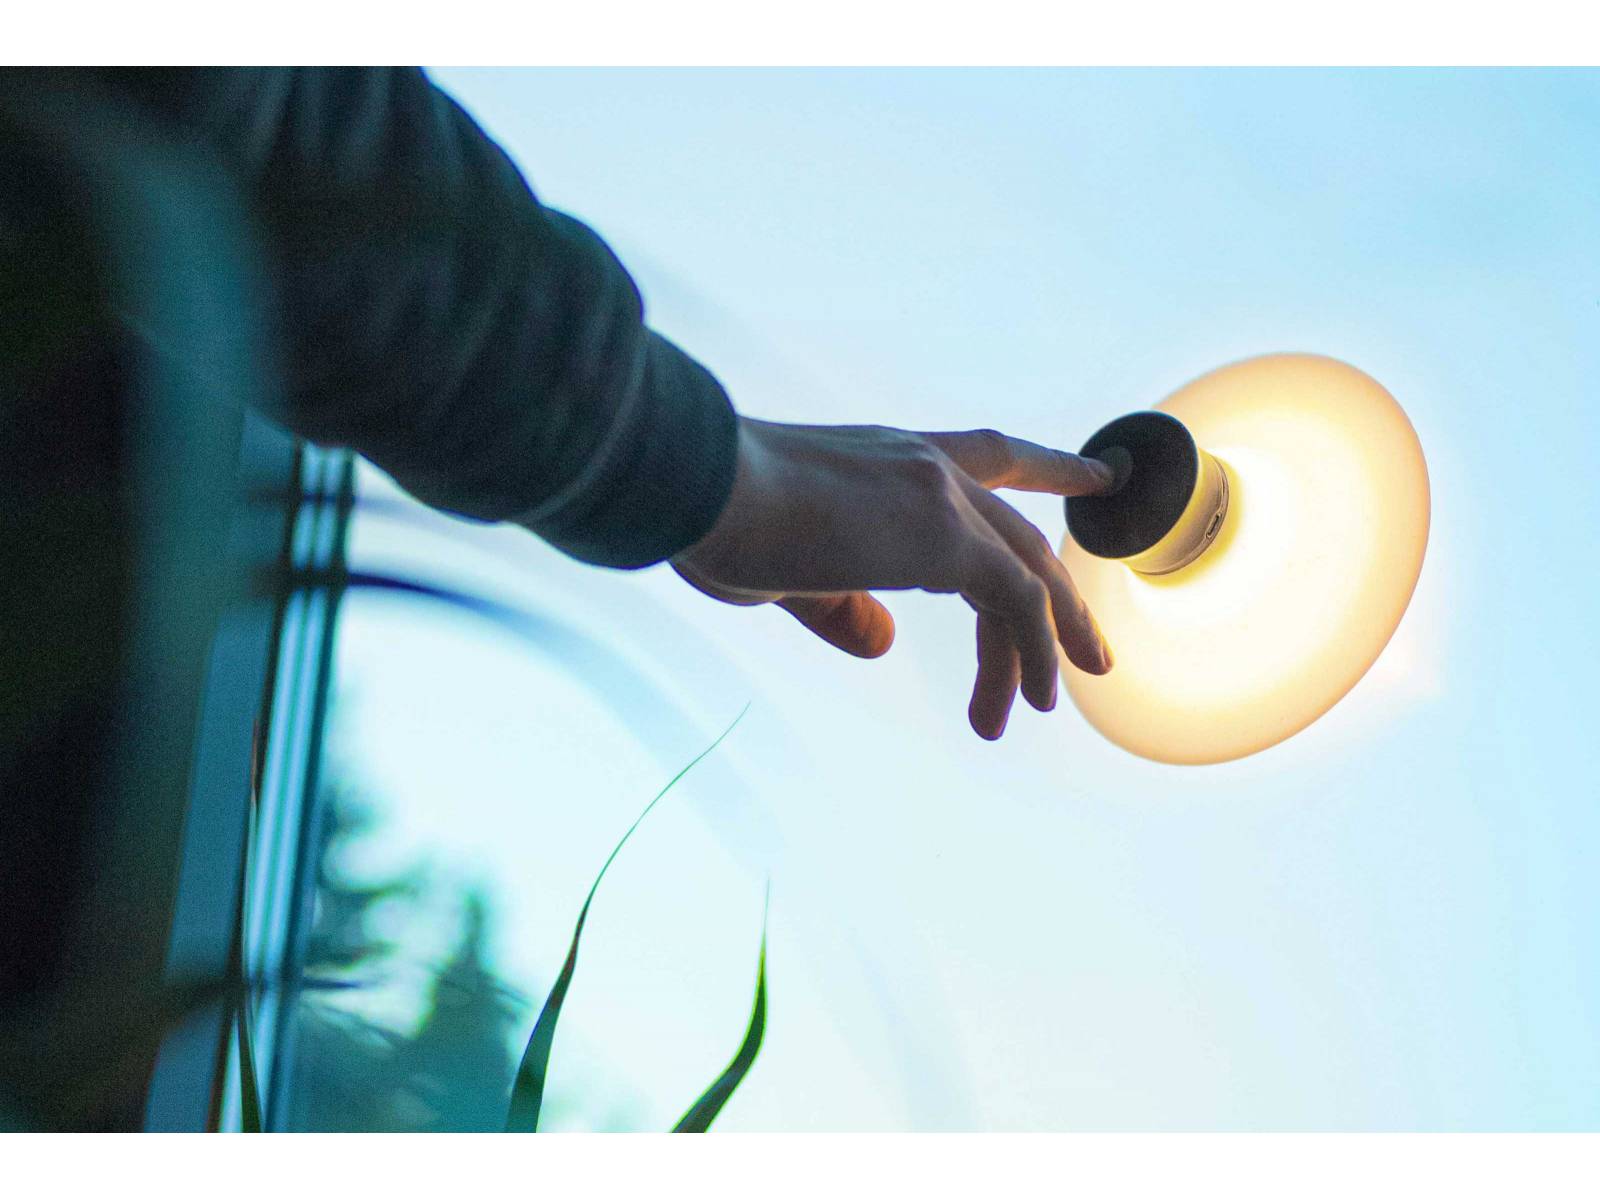 «Neozoon» – eine Leuchte, die in Sekunden fast überall befestigt werden kann. Design: Lukas Heintschel und Kilian Klepper. 